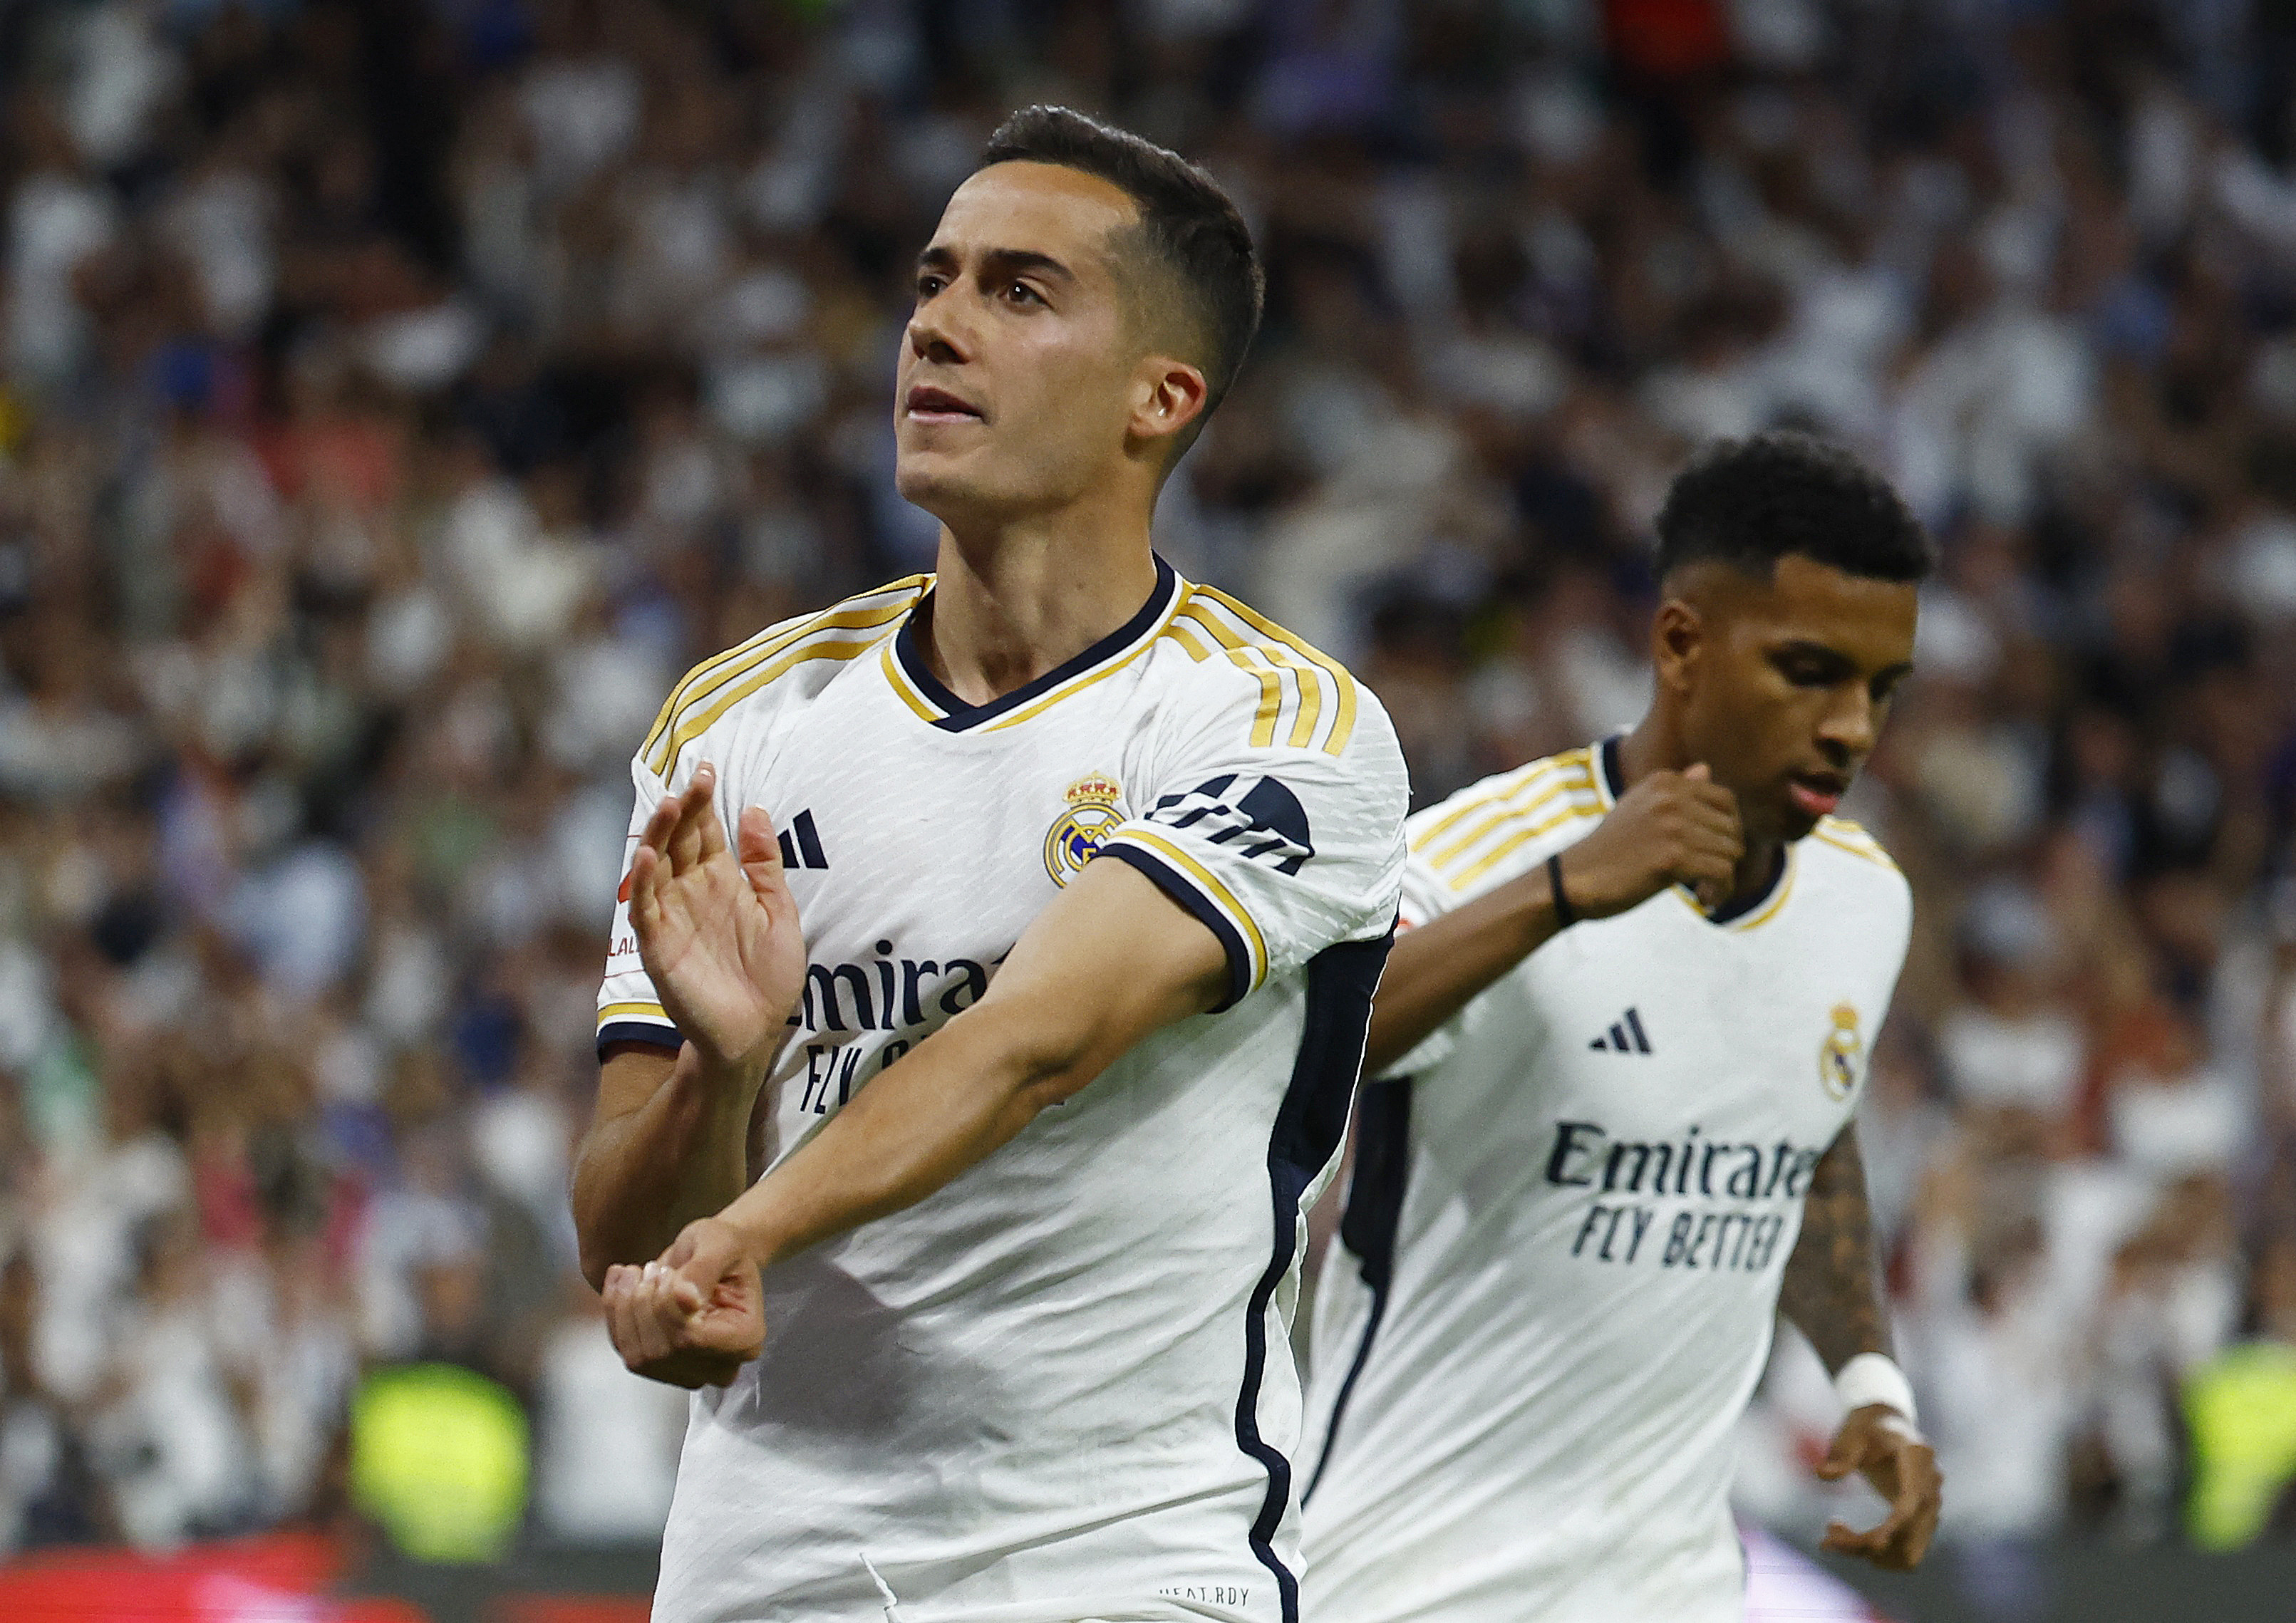 Aprobados y suspensos del Real Madrid contra el Barcelona: el gran día de Lucas Vázquez